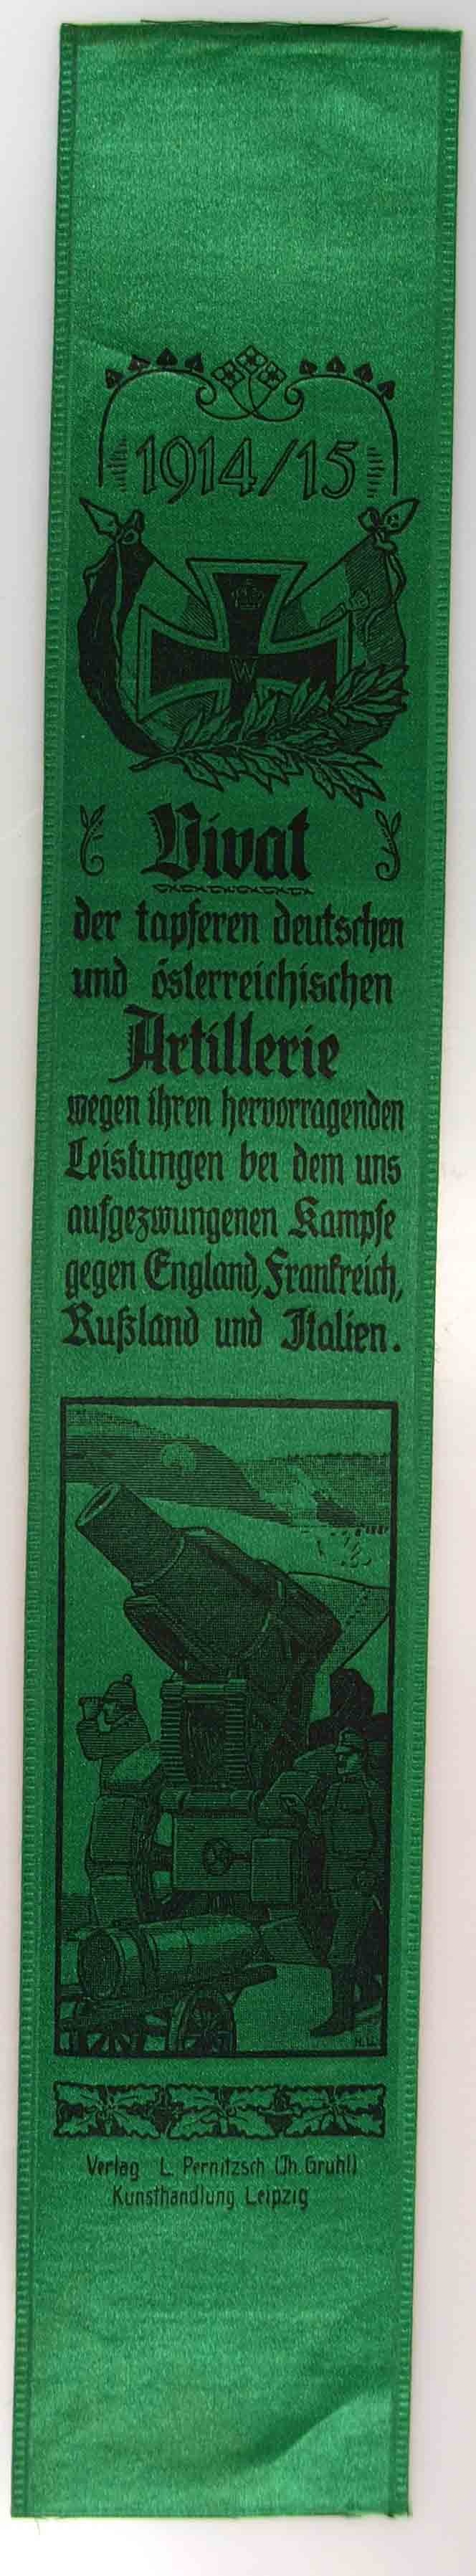 Vivatband der tapferen deutschen und österreichischen Artillerie gewidmet, 1914/15, 1. Weltkrieg (Museum Weißenfels - Schloss Neu-Augustusburg CC BY-NC-SA)